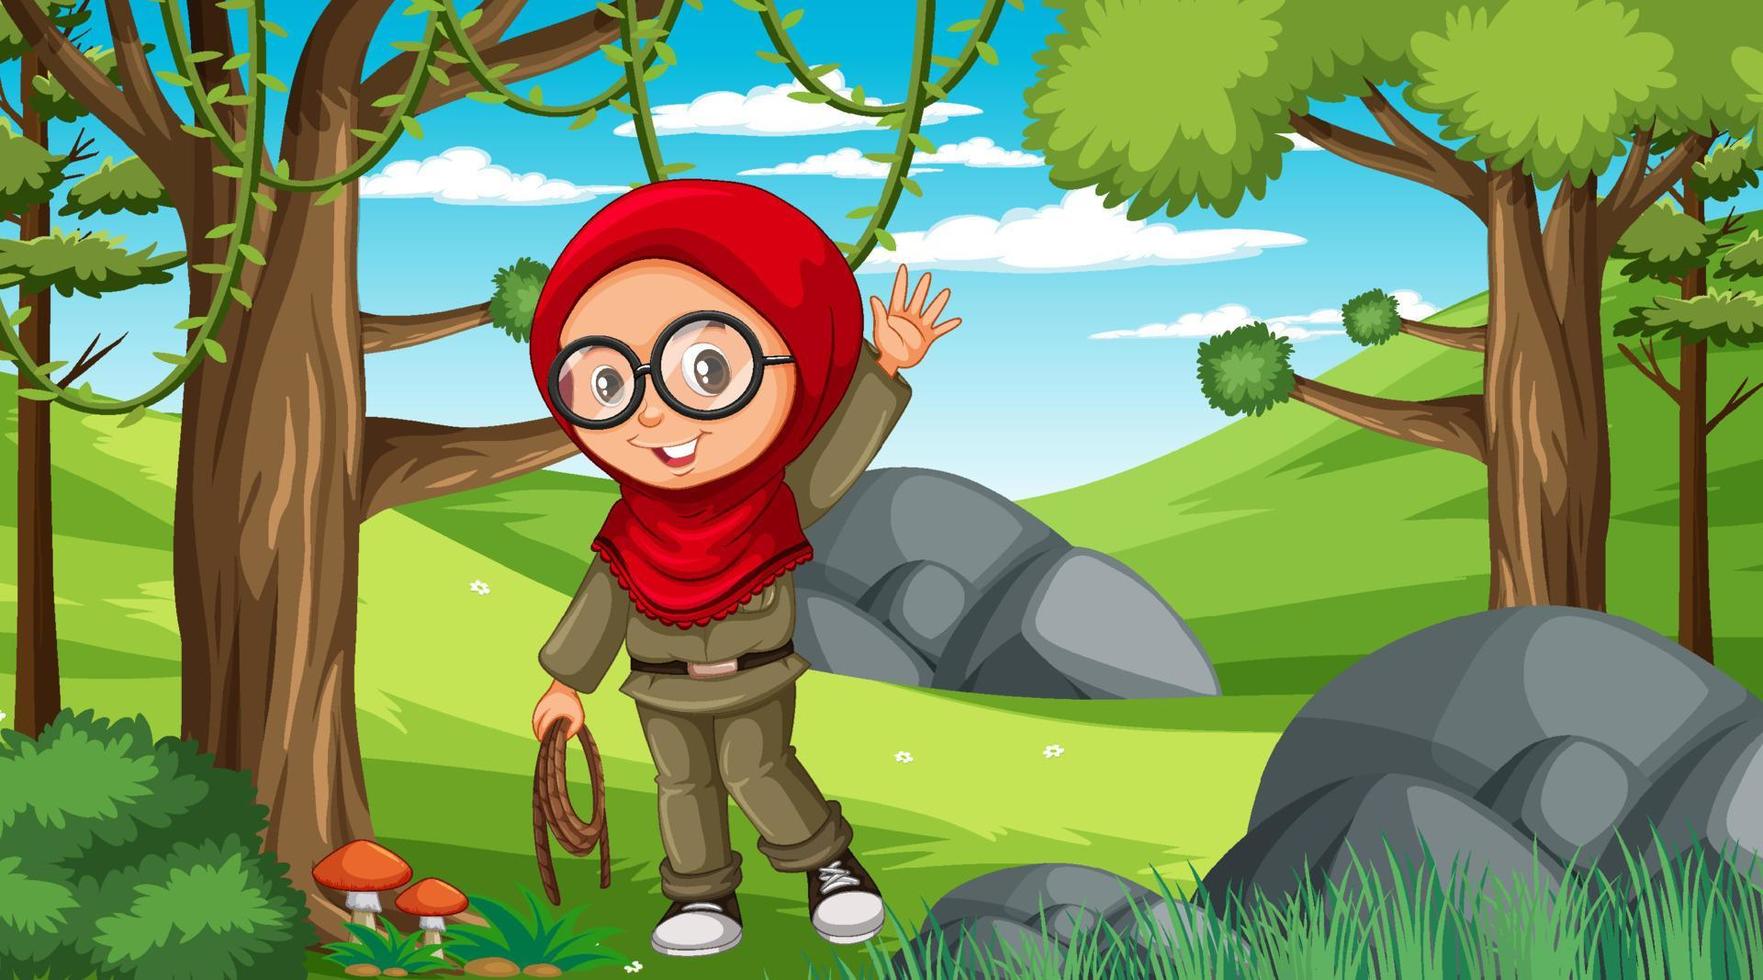 scena della natura con un personaggio dei cartoni animati di una ragazza musulmana che esplora nella foresta vettore